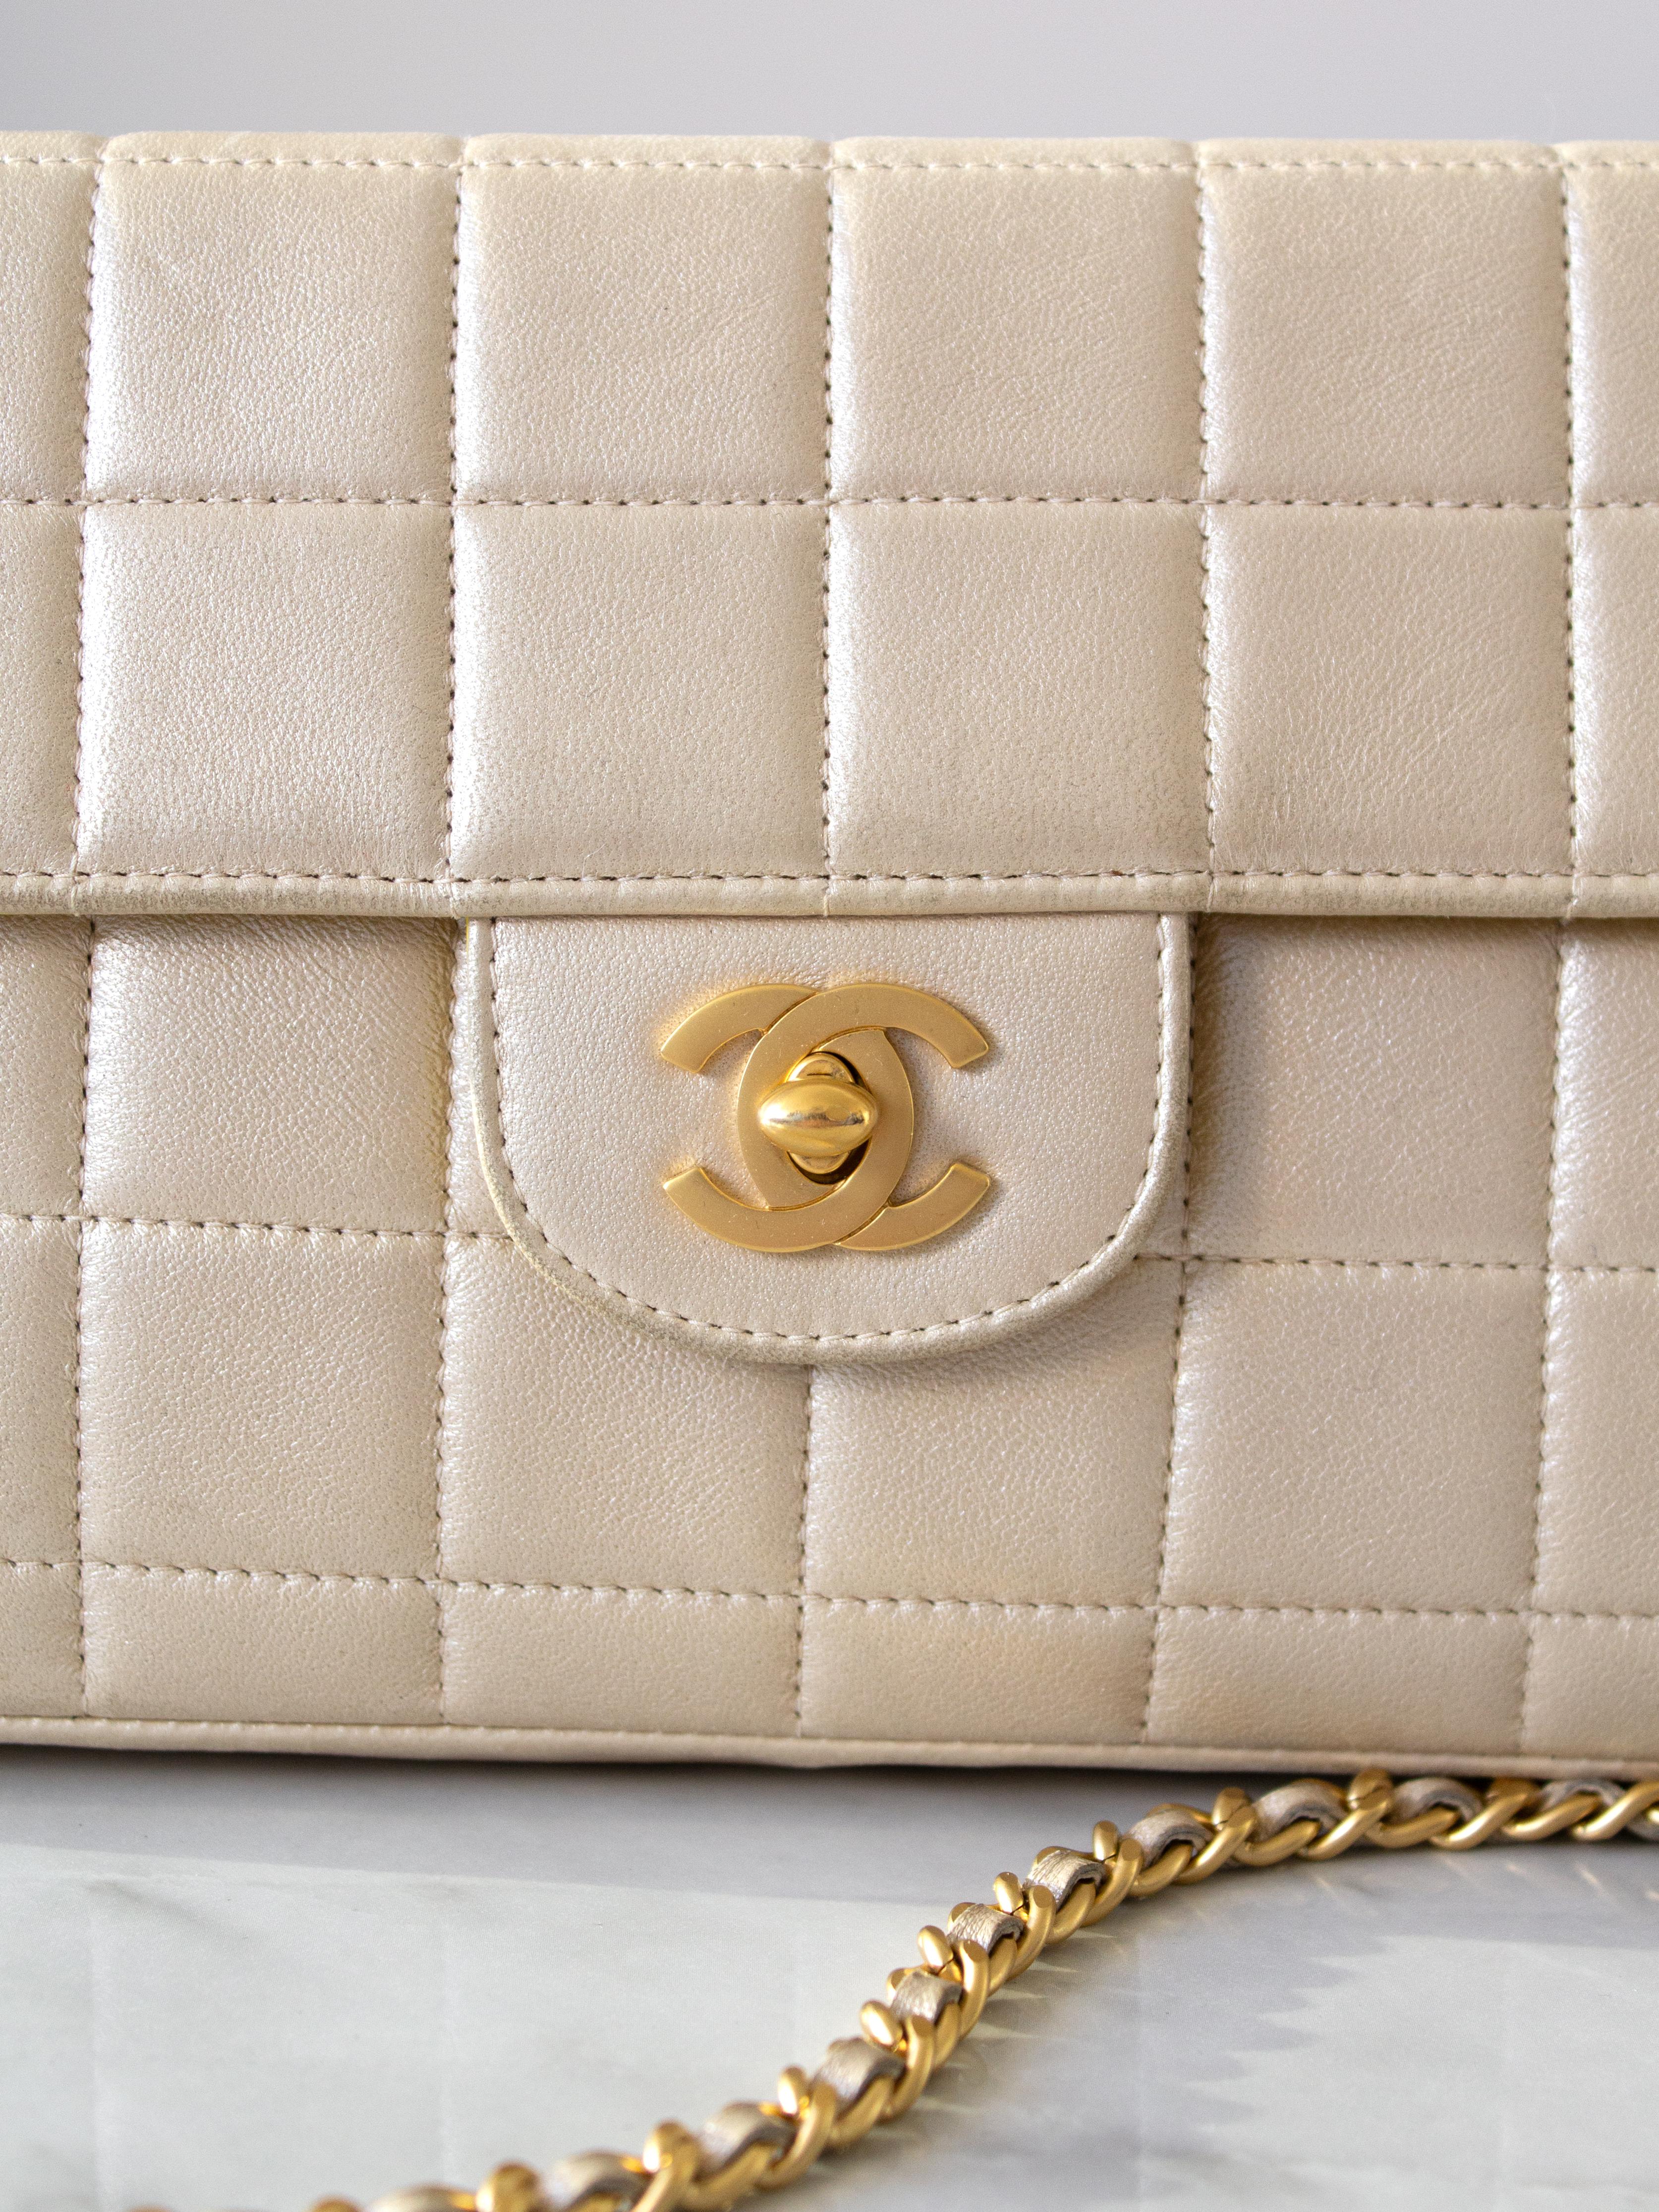 Die kultige Chanel East West Tasche aus dem Jahr 2002 bringt die Jahrtausendwende in Schwung. Dieses Schmuckstück zeigt sich in einer trendigen Baguette-Silhouette und der charakteristischen Chocolate Bar-Steppung. Die Tasche aus perlmuttgoldenem